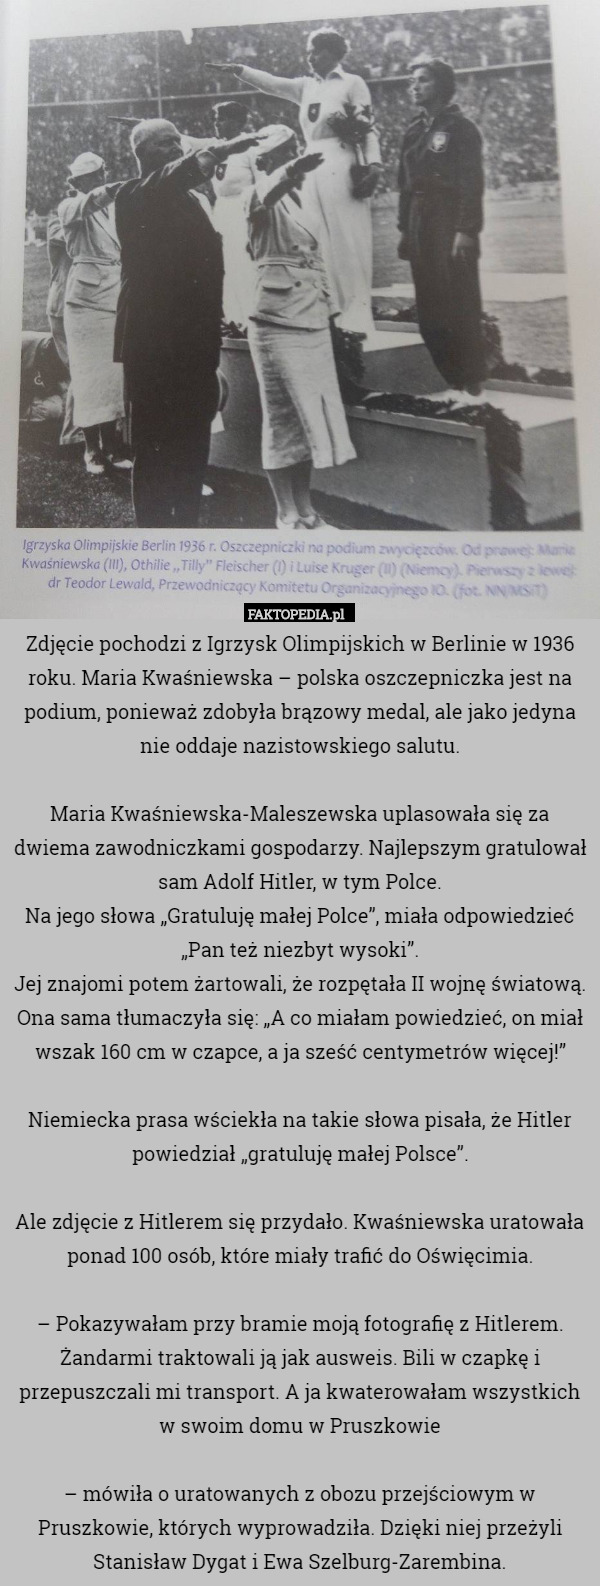 Zdjęcie pochodzi z Igrzysk Olimpijskich w Berlinie w 1936 roku. Maria Kwaśniewska – polska oszczepniczka jest na podium, ponieważ zdobyła brązowy medal, ale jako jedyna nie oddaje nazistowskiego salutu.

Maria Kwaśniewska-Maleszewska uplasowała się za dwiema zawodniczkami gospodarzy. Najlepszym gratulował sam Adolf Hitler, w tym Polce.
Na jego słowa „Gratuluję małej Polce”, miała odpowiedzieć „Pan też niezbyt wysoki”.
Jej znajomi potem żartowali, że rozpętała II wojnę światową. Ona sama tłumaczyła się: „A co miałam powiedzieć, on miał wszak 160 cm w czapce, a ja sześć centymetrów więcej!”

Niemiecka prasa wściekła na takie słowa pisała, że Hitler powiedział „gratuluję małej Polsce”.

Ale zdjęcie z Hitlerem się przydało. Kwaśniewska uratowała ponad 100 osób, które miały trafić do Oświęcimia.

– Pokazywałam przy bramie moją fotografię z Hitlerem. Żandarmi traktowali ją jak ausweis. Bili w czapkę i przepuszczali mi transport. A ja kwaterowałam wszystkich w swoim domu w Pruszkowie

– mówiła o uratowanych z obozu przejściowym w Pruszkowie, których wyprowadziła. Dzięki niej przeżyli Stanisław Dygat i Ewa Szelburg-Zarembina. 